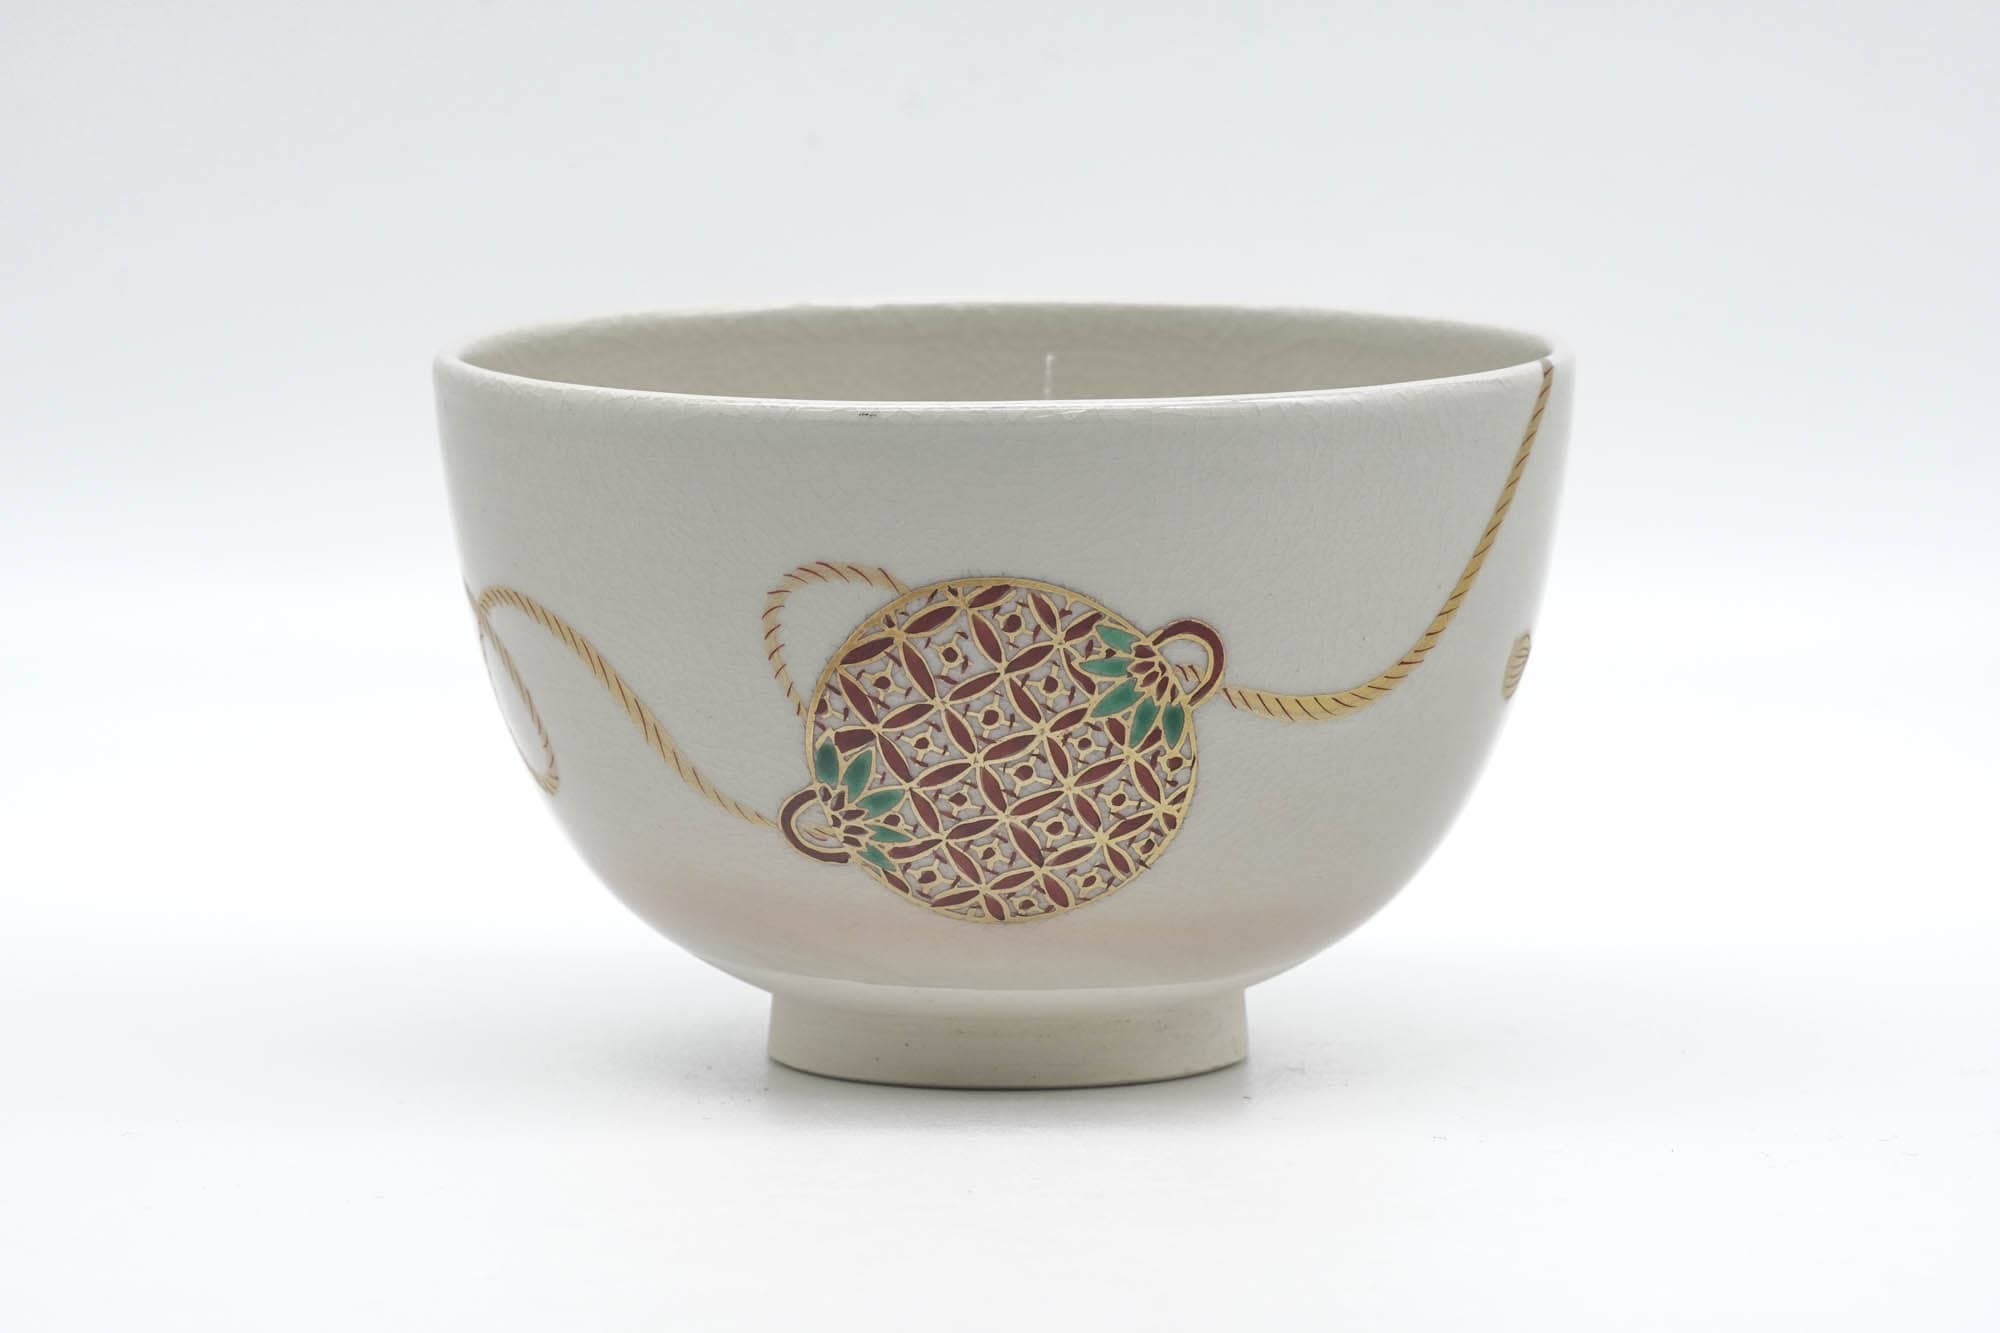 Japanese Matcha Bowl - Decorated Geometric Ornaments Kyo-yaki Chawan - 250ml